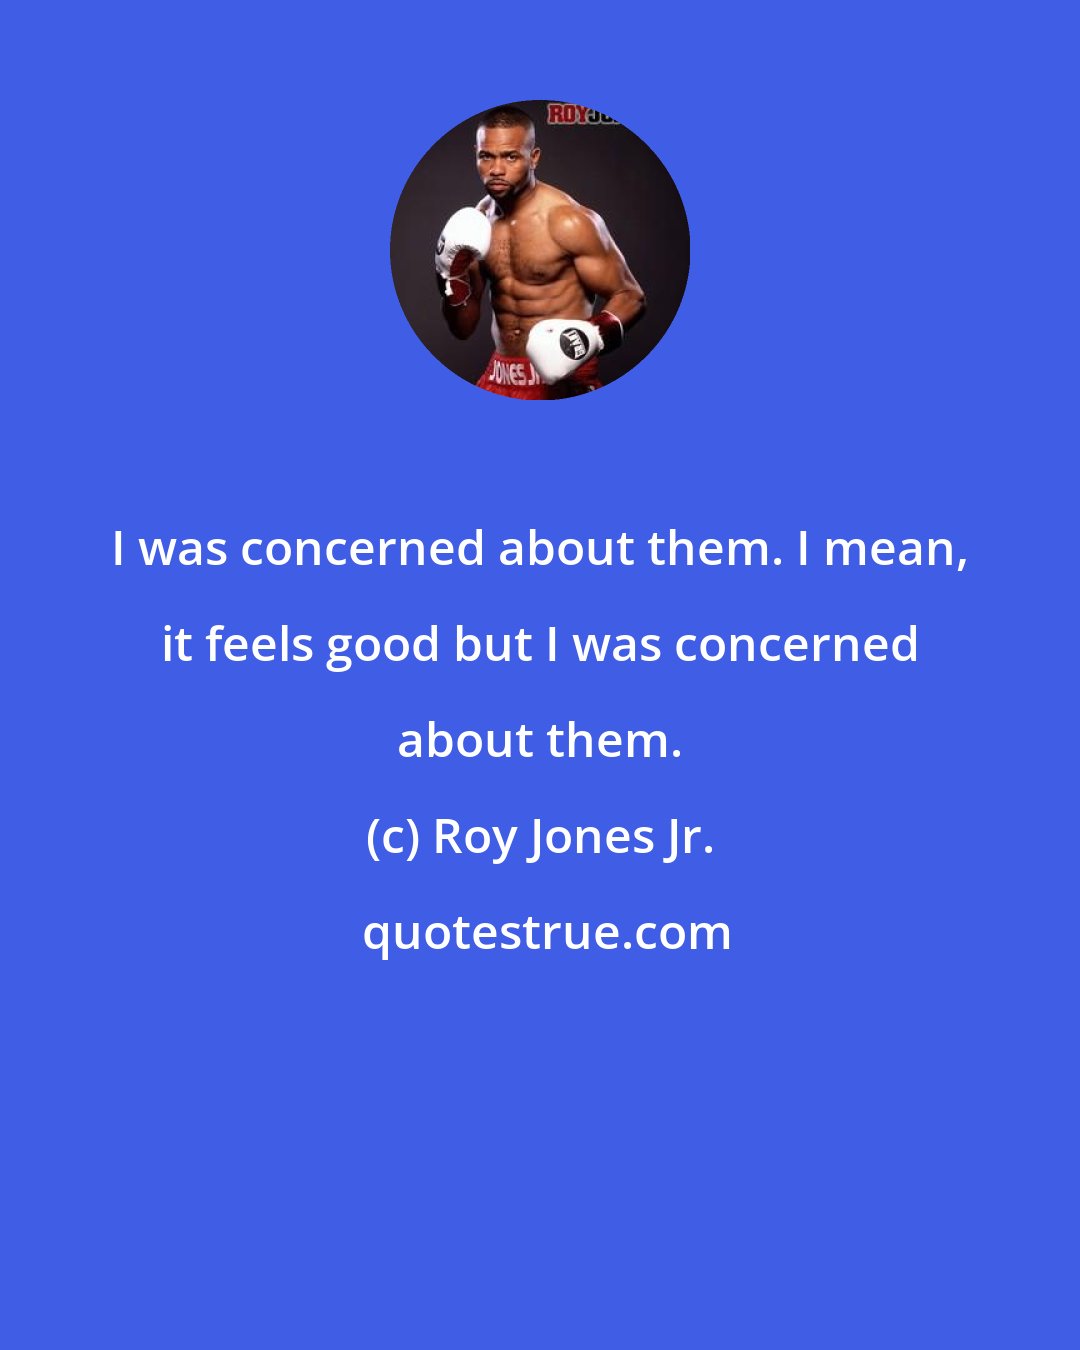 Roy Jones Jr.: I was concerned about them. I mean, it feels good but I was concerned about them.